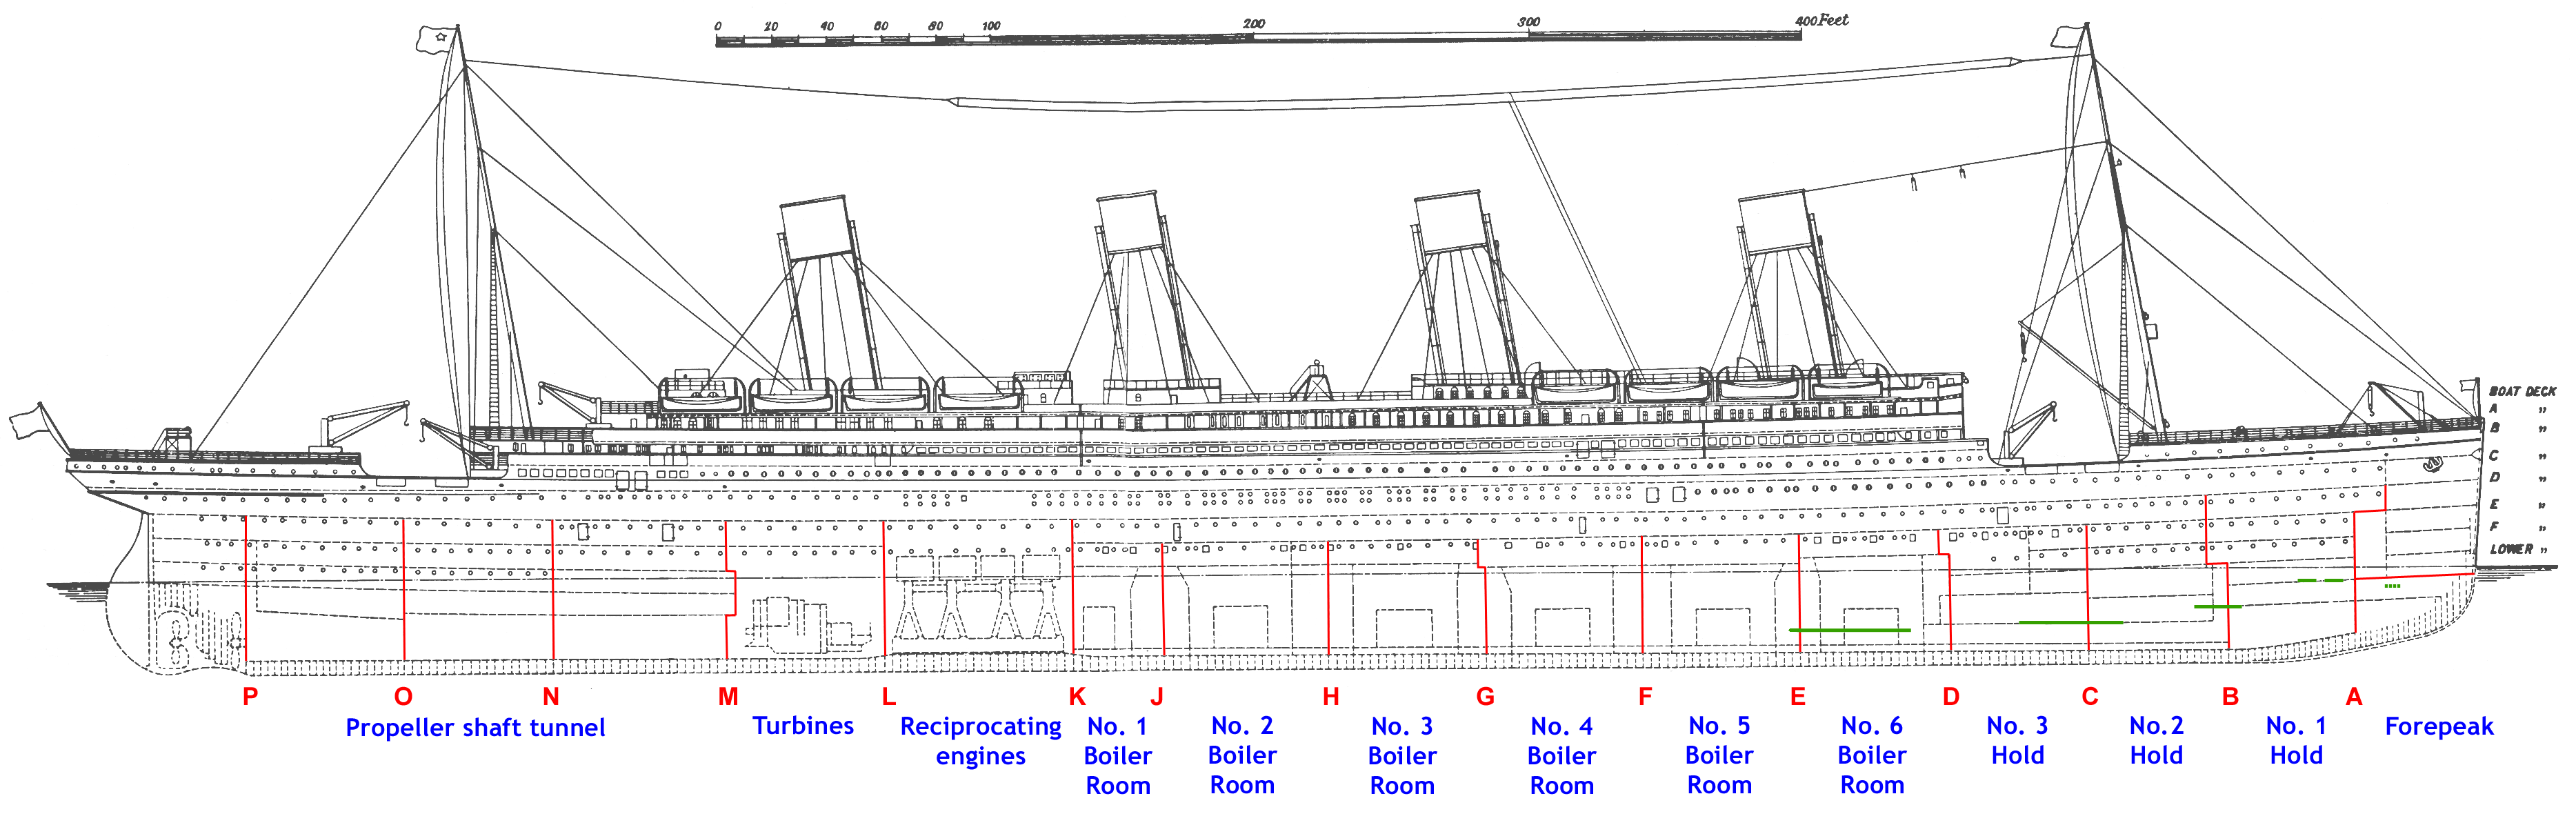 Diagram of RMS Titanic